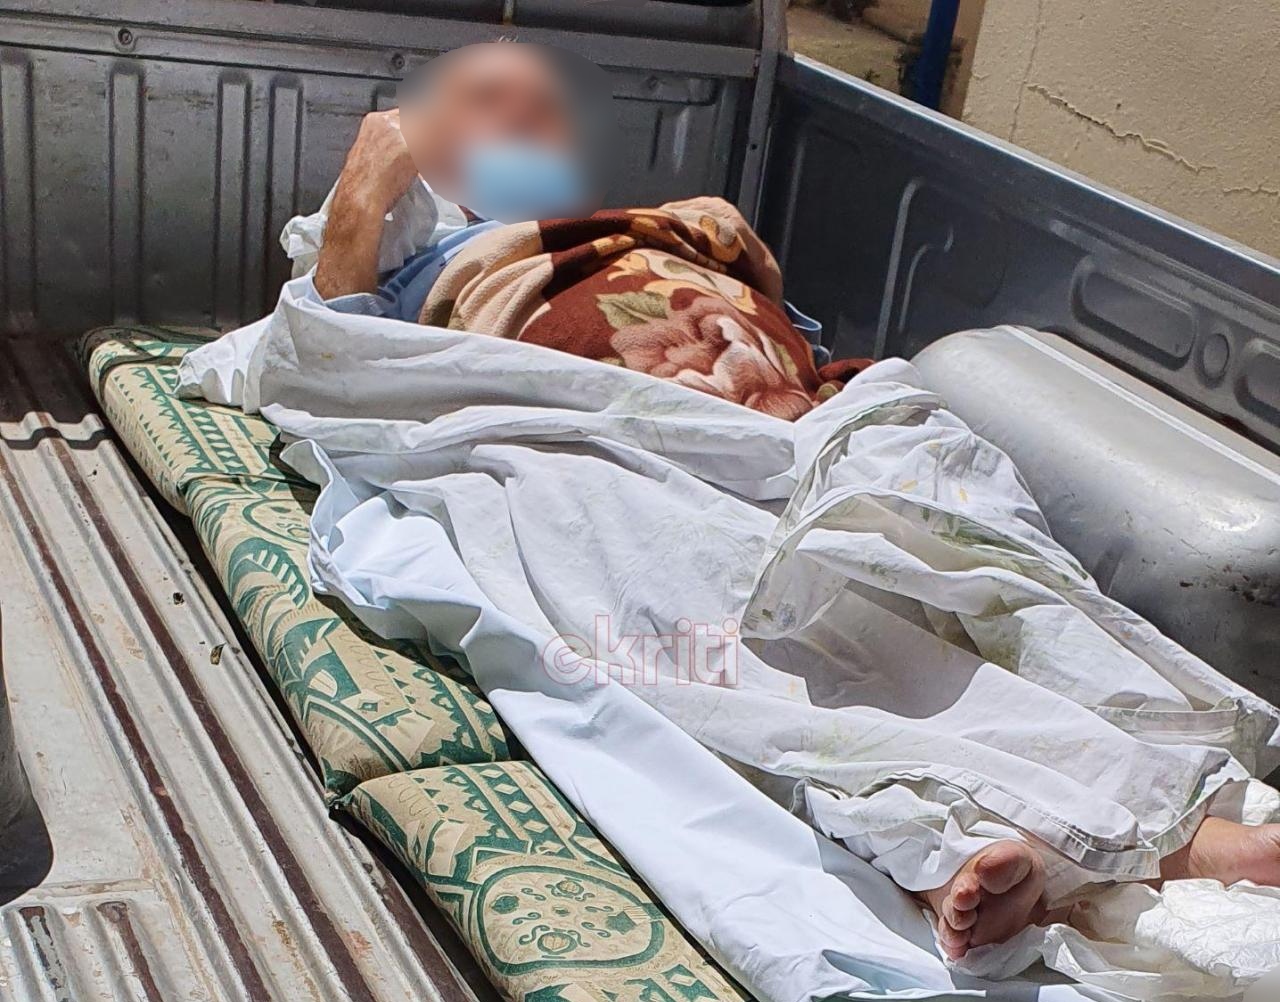 Εικόνες ντροπής με ηλικιωμένο να μεταφέρεται σε καρότσα αγροτικού, ελλείψει ασθενοφόρου